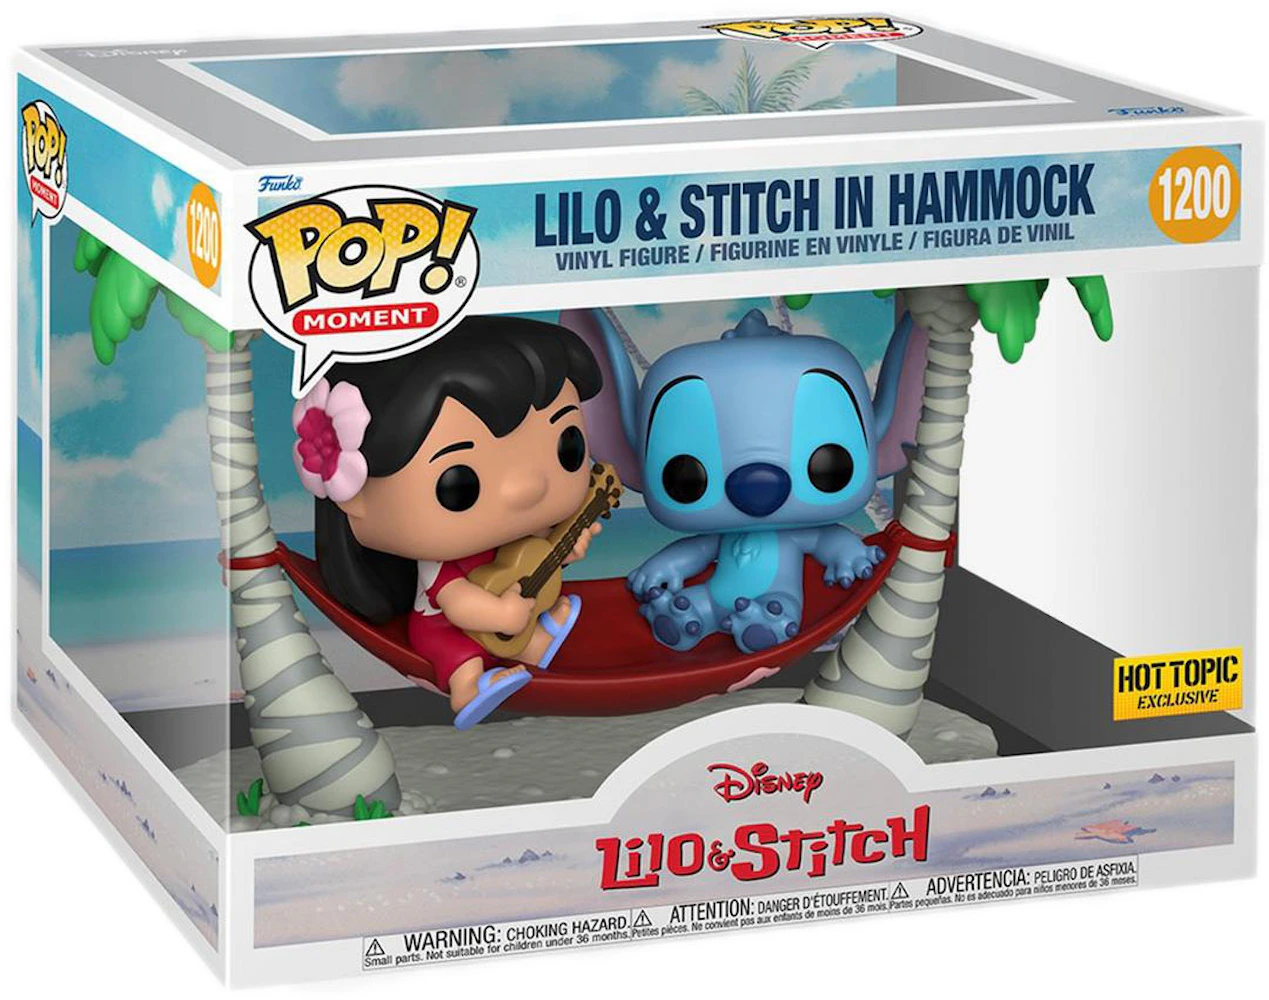 LILO & Stitch en hamaca POP! Momentos #1200